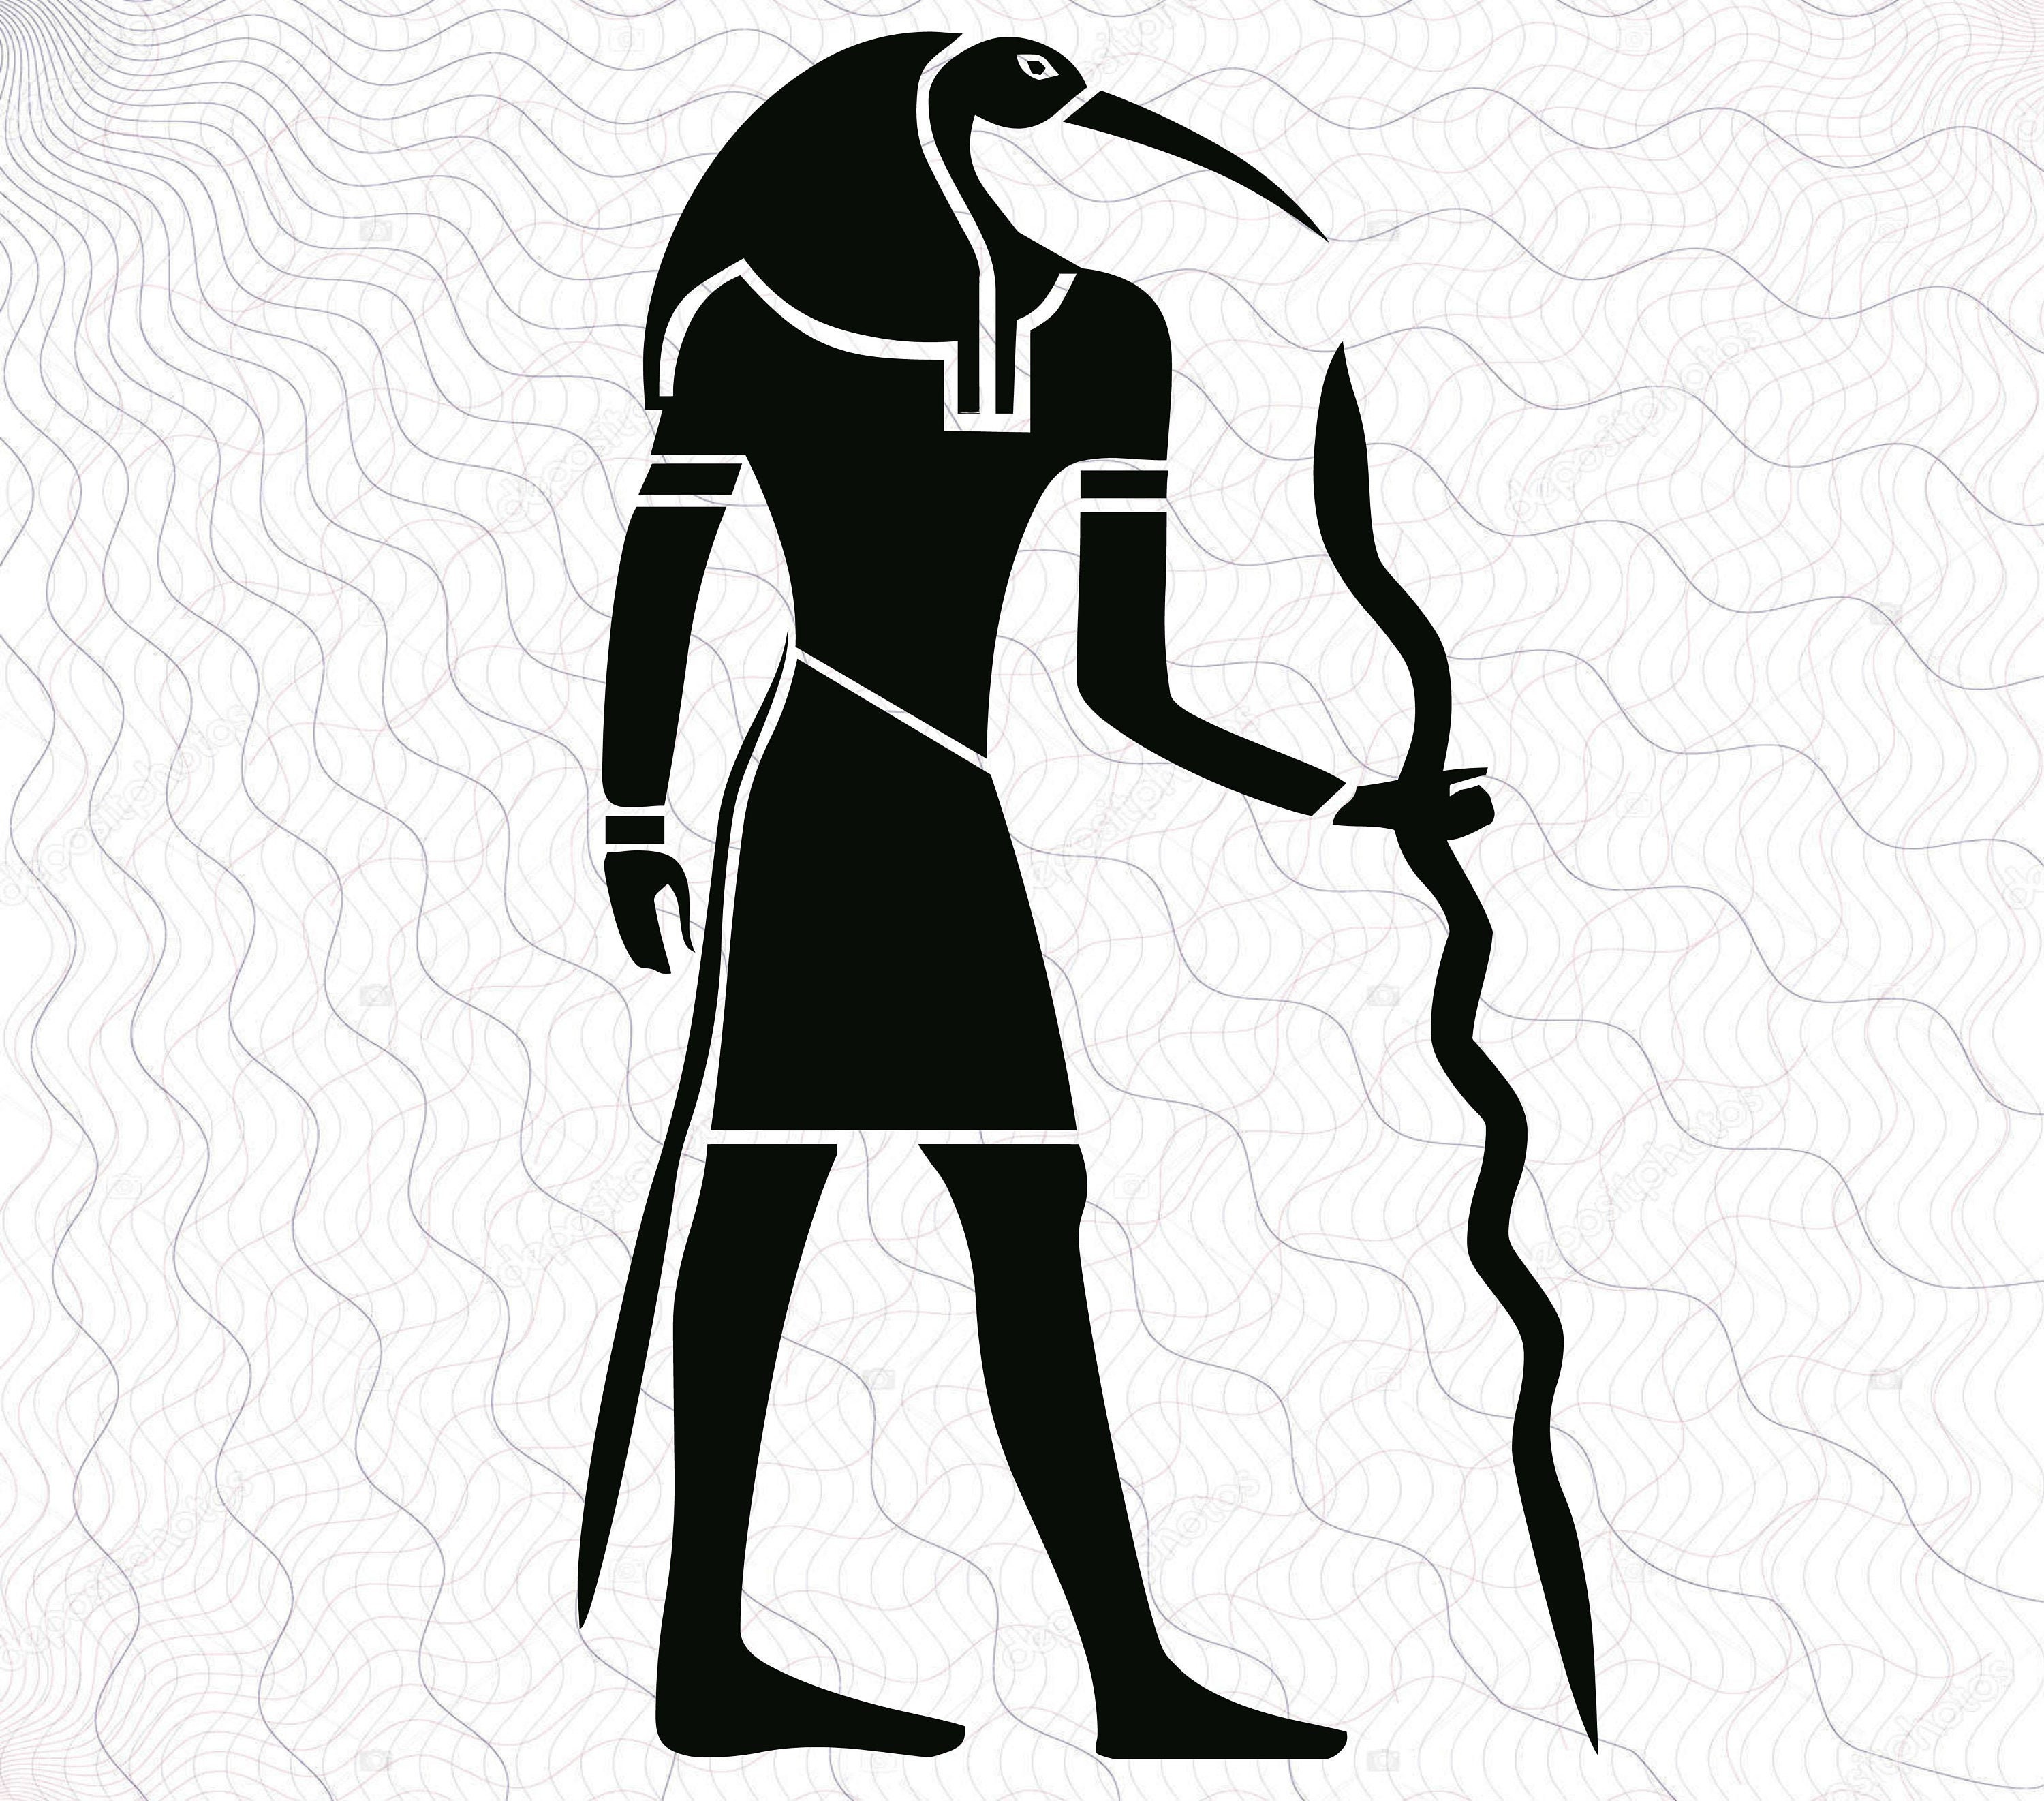 Пиктограммы древних людей. Иероглифы Египта фараон. Идеограмма божеств древнего Египта. Иероглифы богов древнего Египта. Египетские пиктограммы.